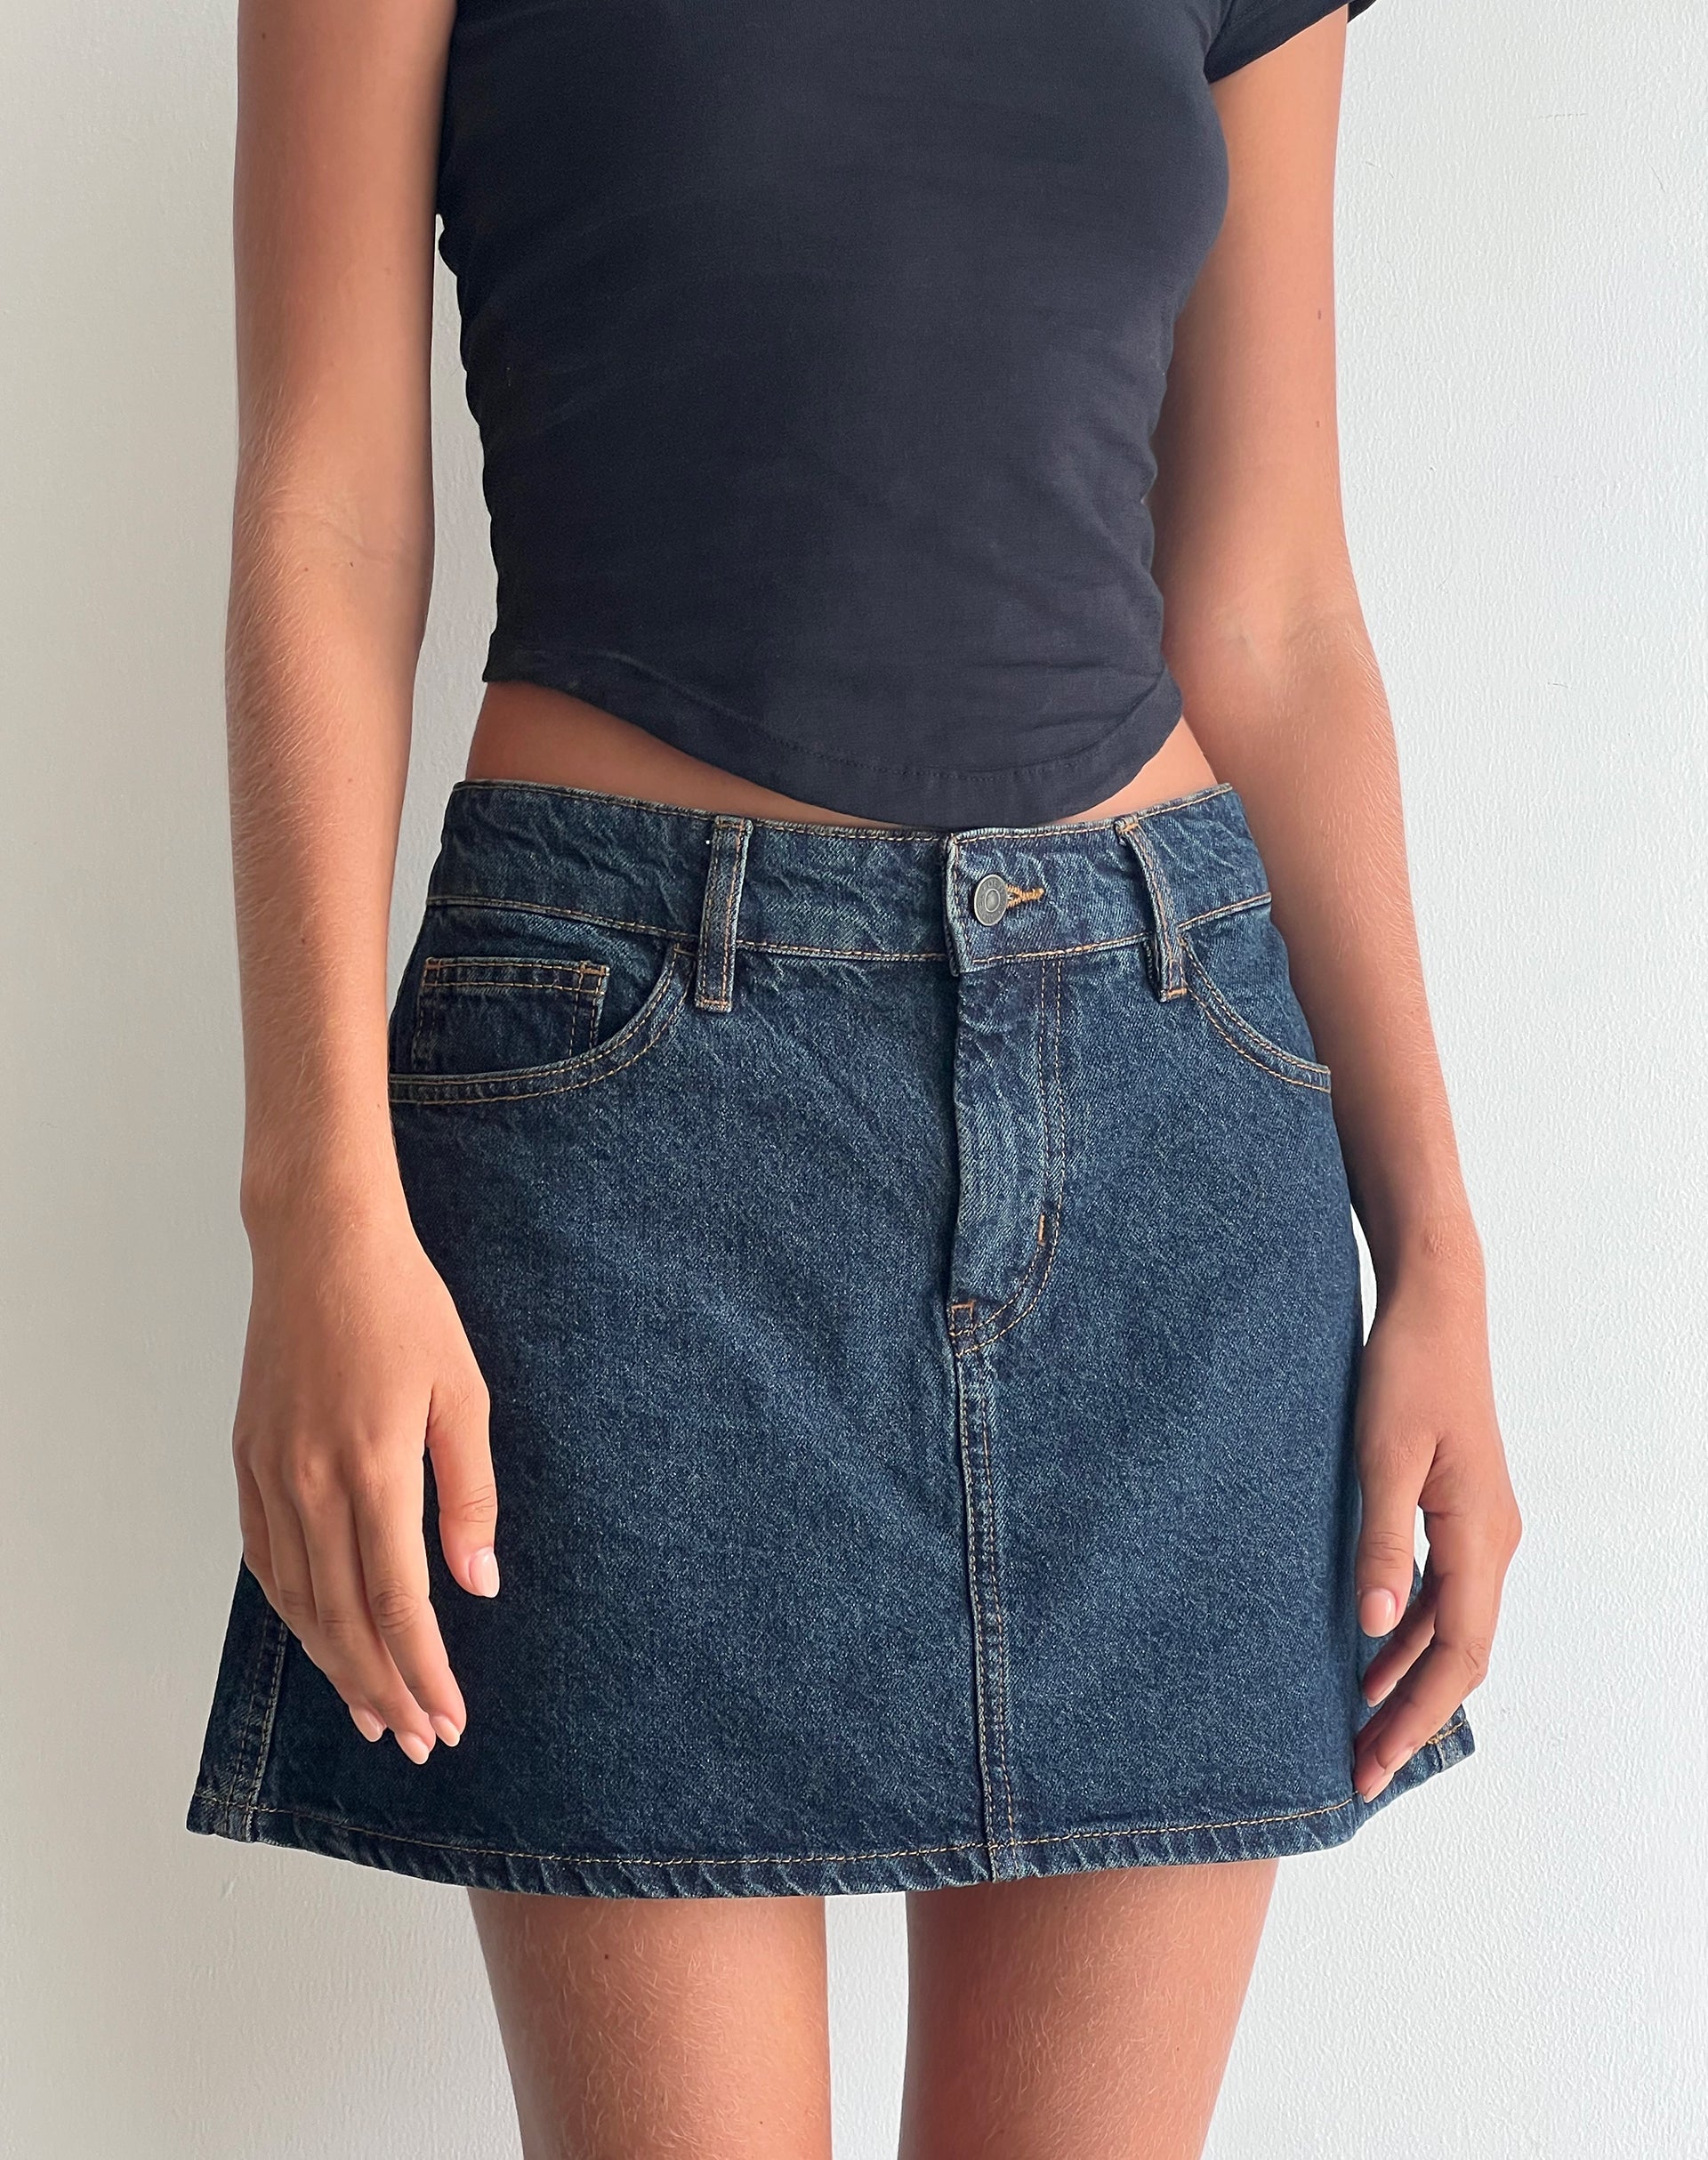 Imagen de la minifalda A-Line en denim índigo